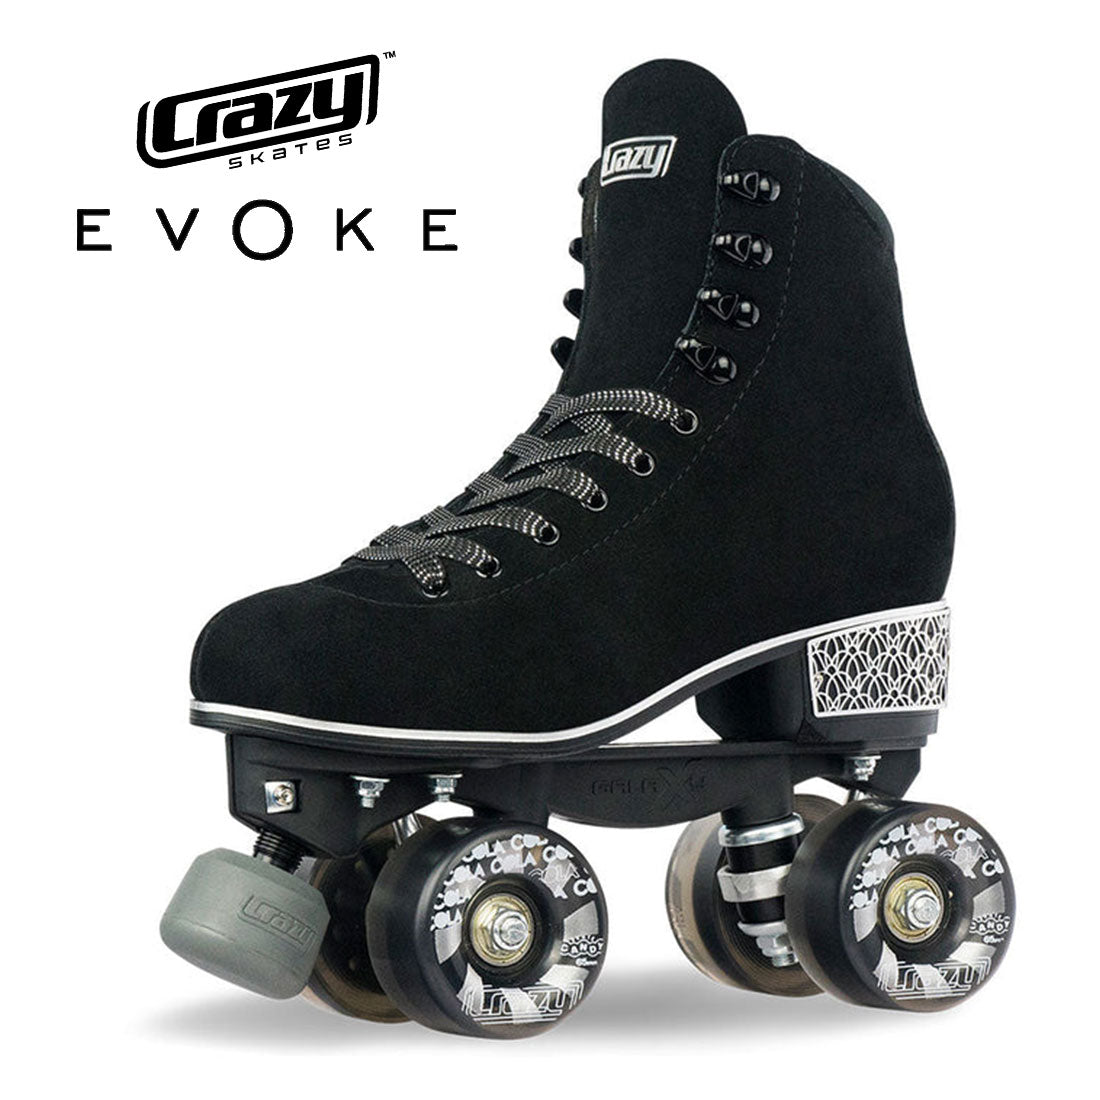 Crazy Evoke Roller - Suede Black Roller Skates